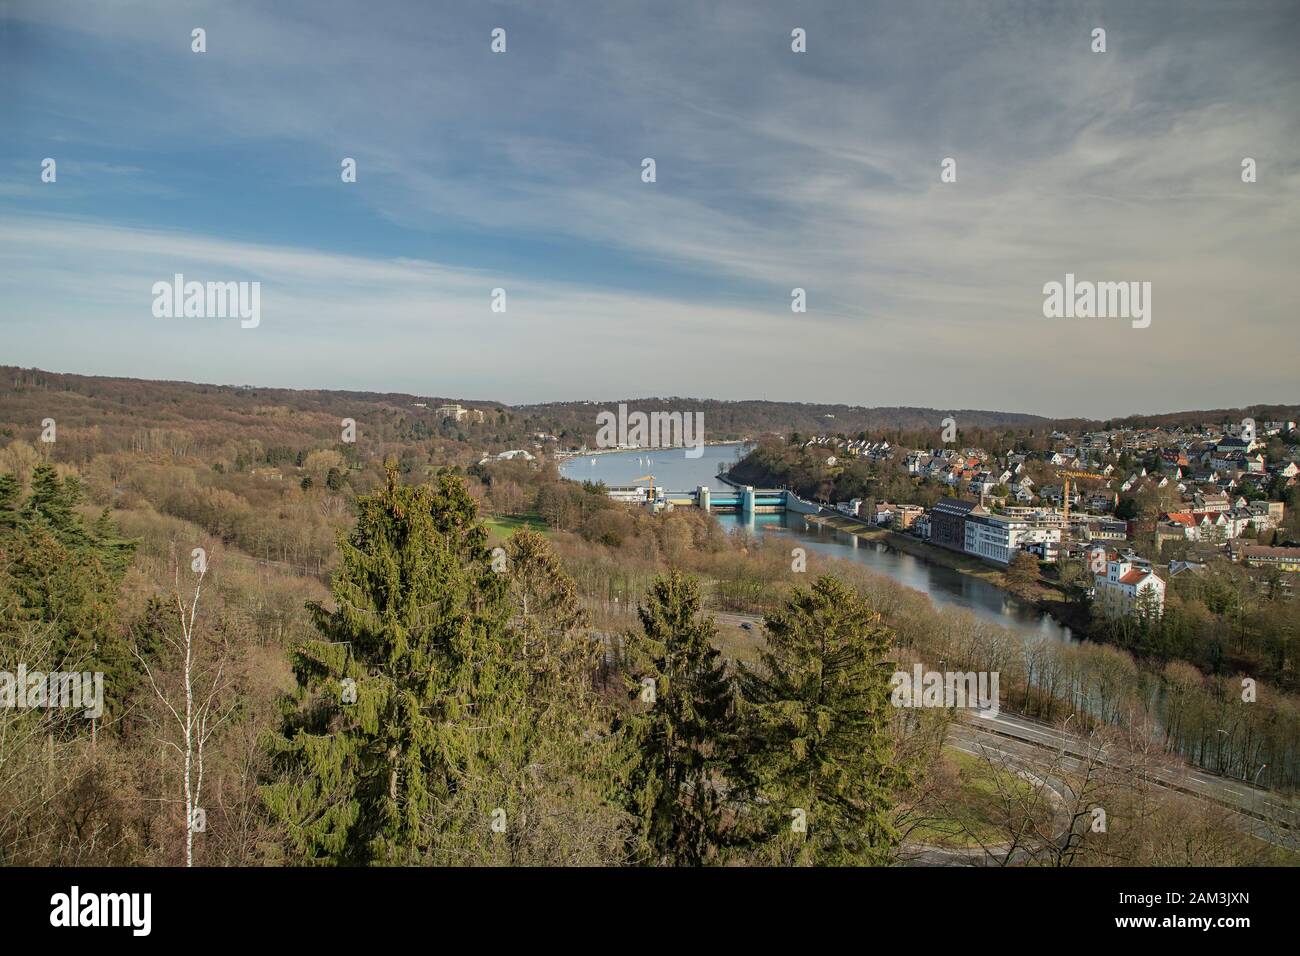 Essen - View from Baldeney-Steig to barrage and Lake Baldeney, North Rhine Westphalia, Germany, Essen, 23.02.2019 Stock Photo